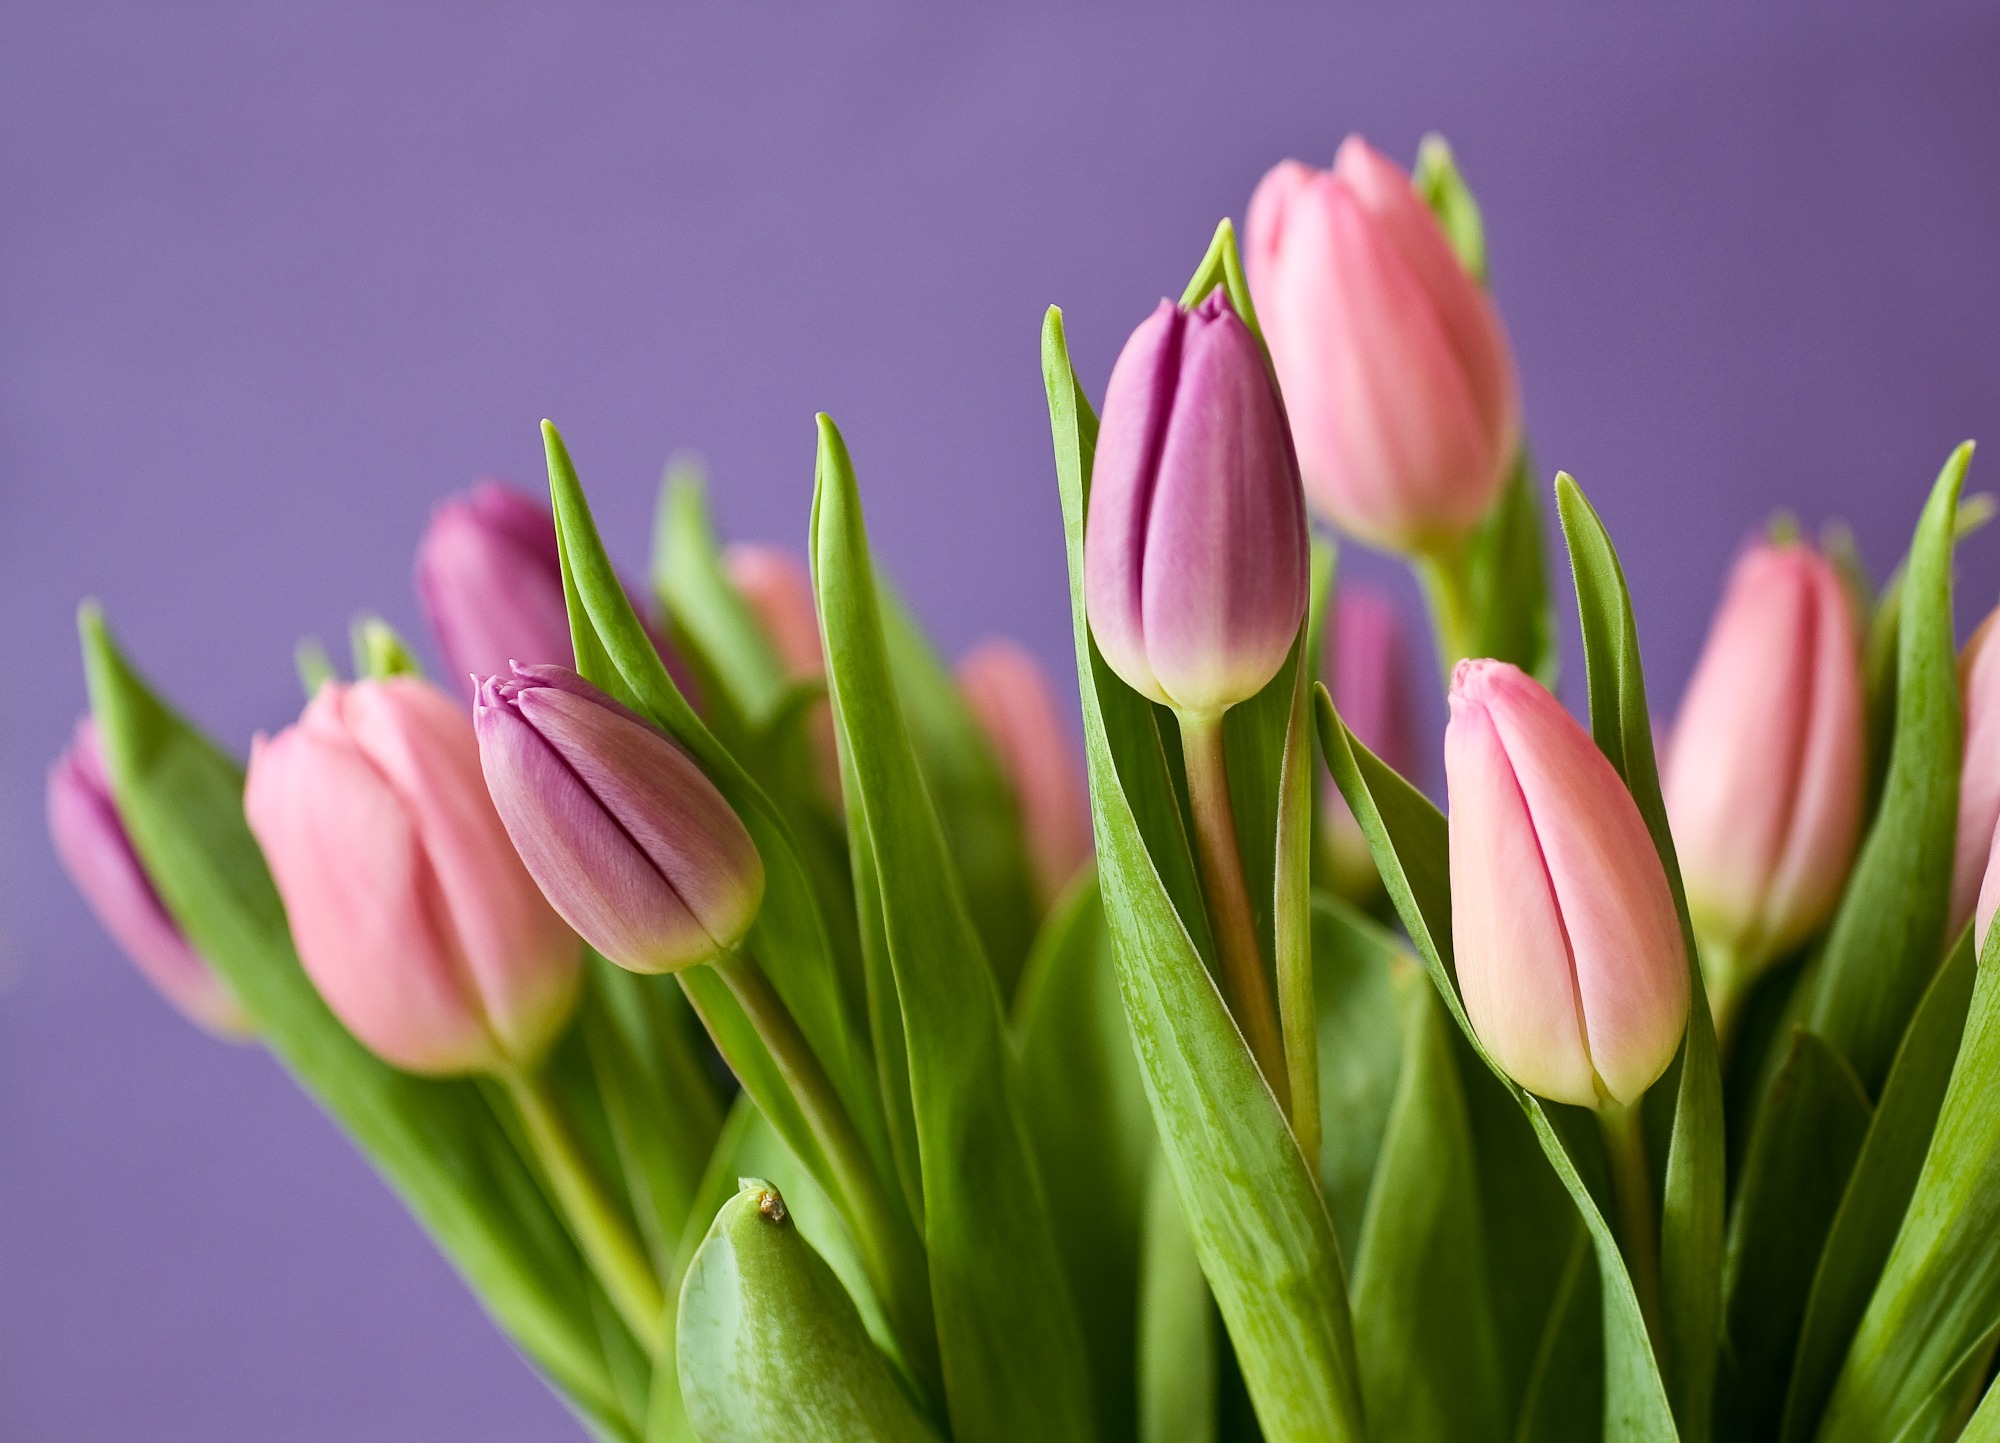 El Tulipán y algunos de sus secretos - Blog sobre los secretos de la flor  cortada